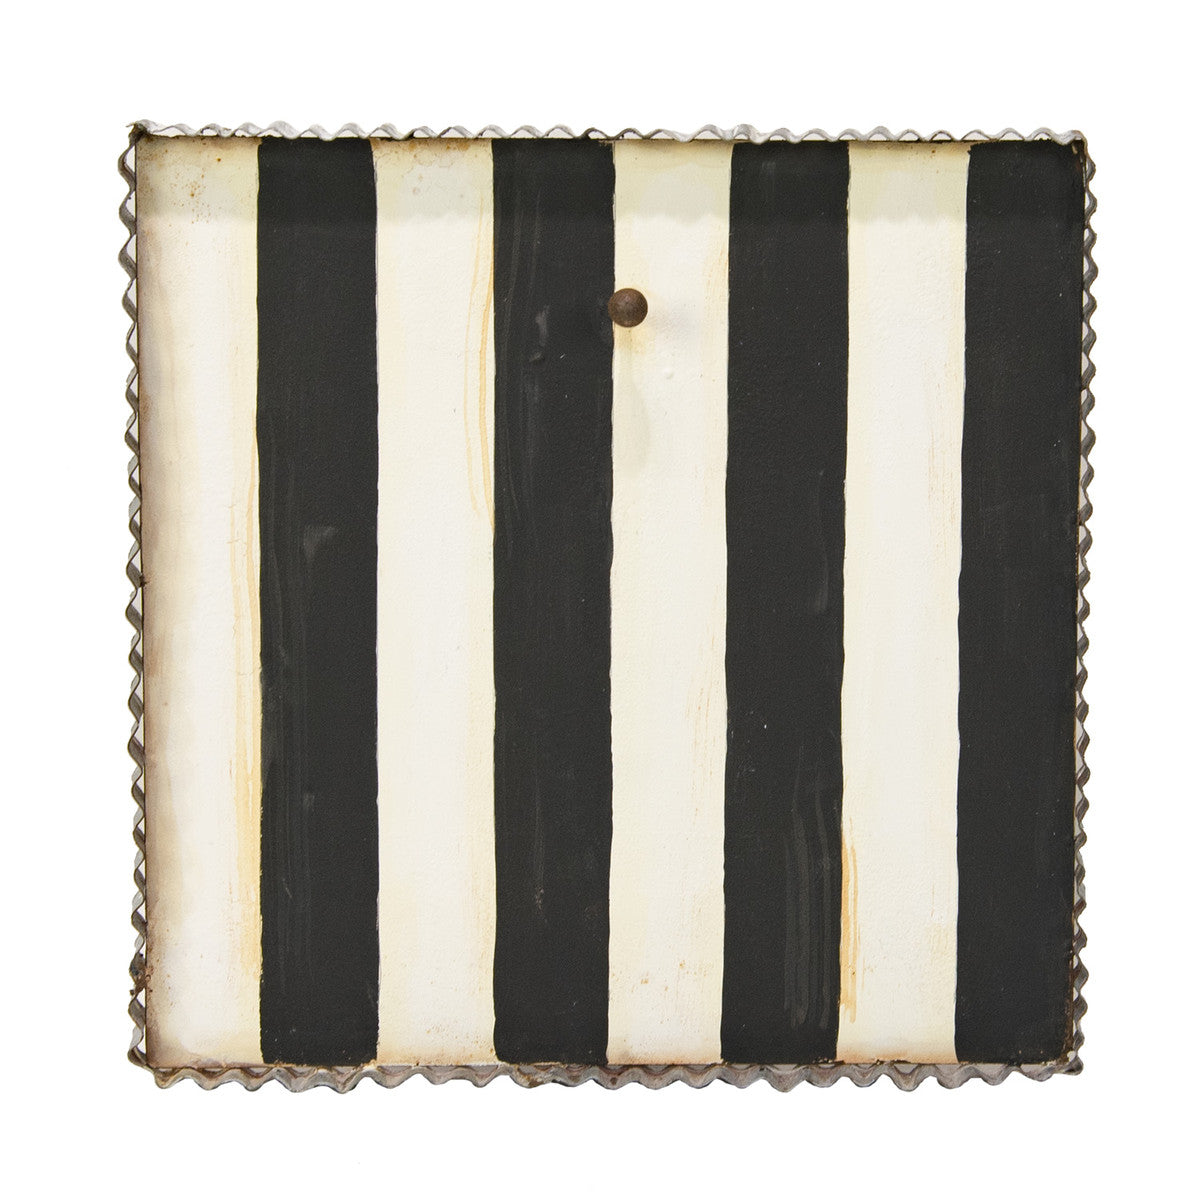 Mini Gallery Display Board || Black & White Striped